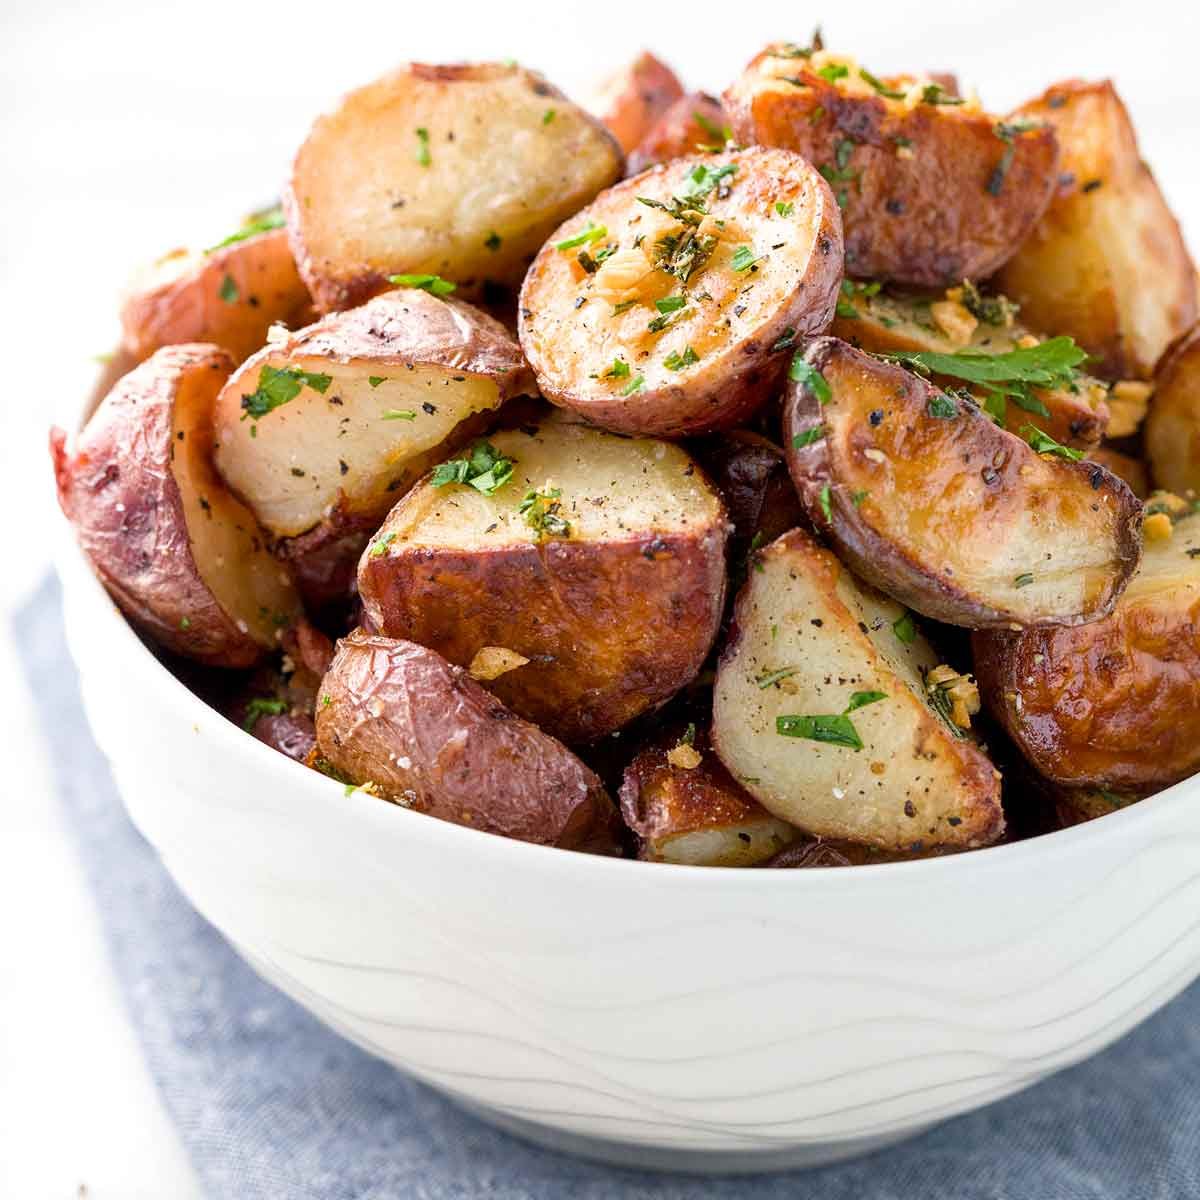 Rosemary Garlic Baked Potatoes Recipe